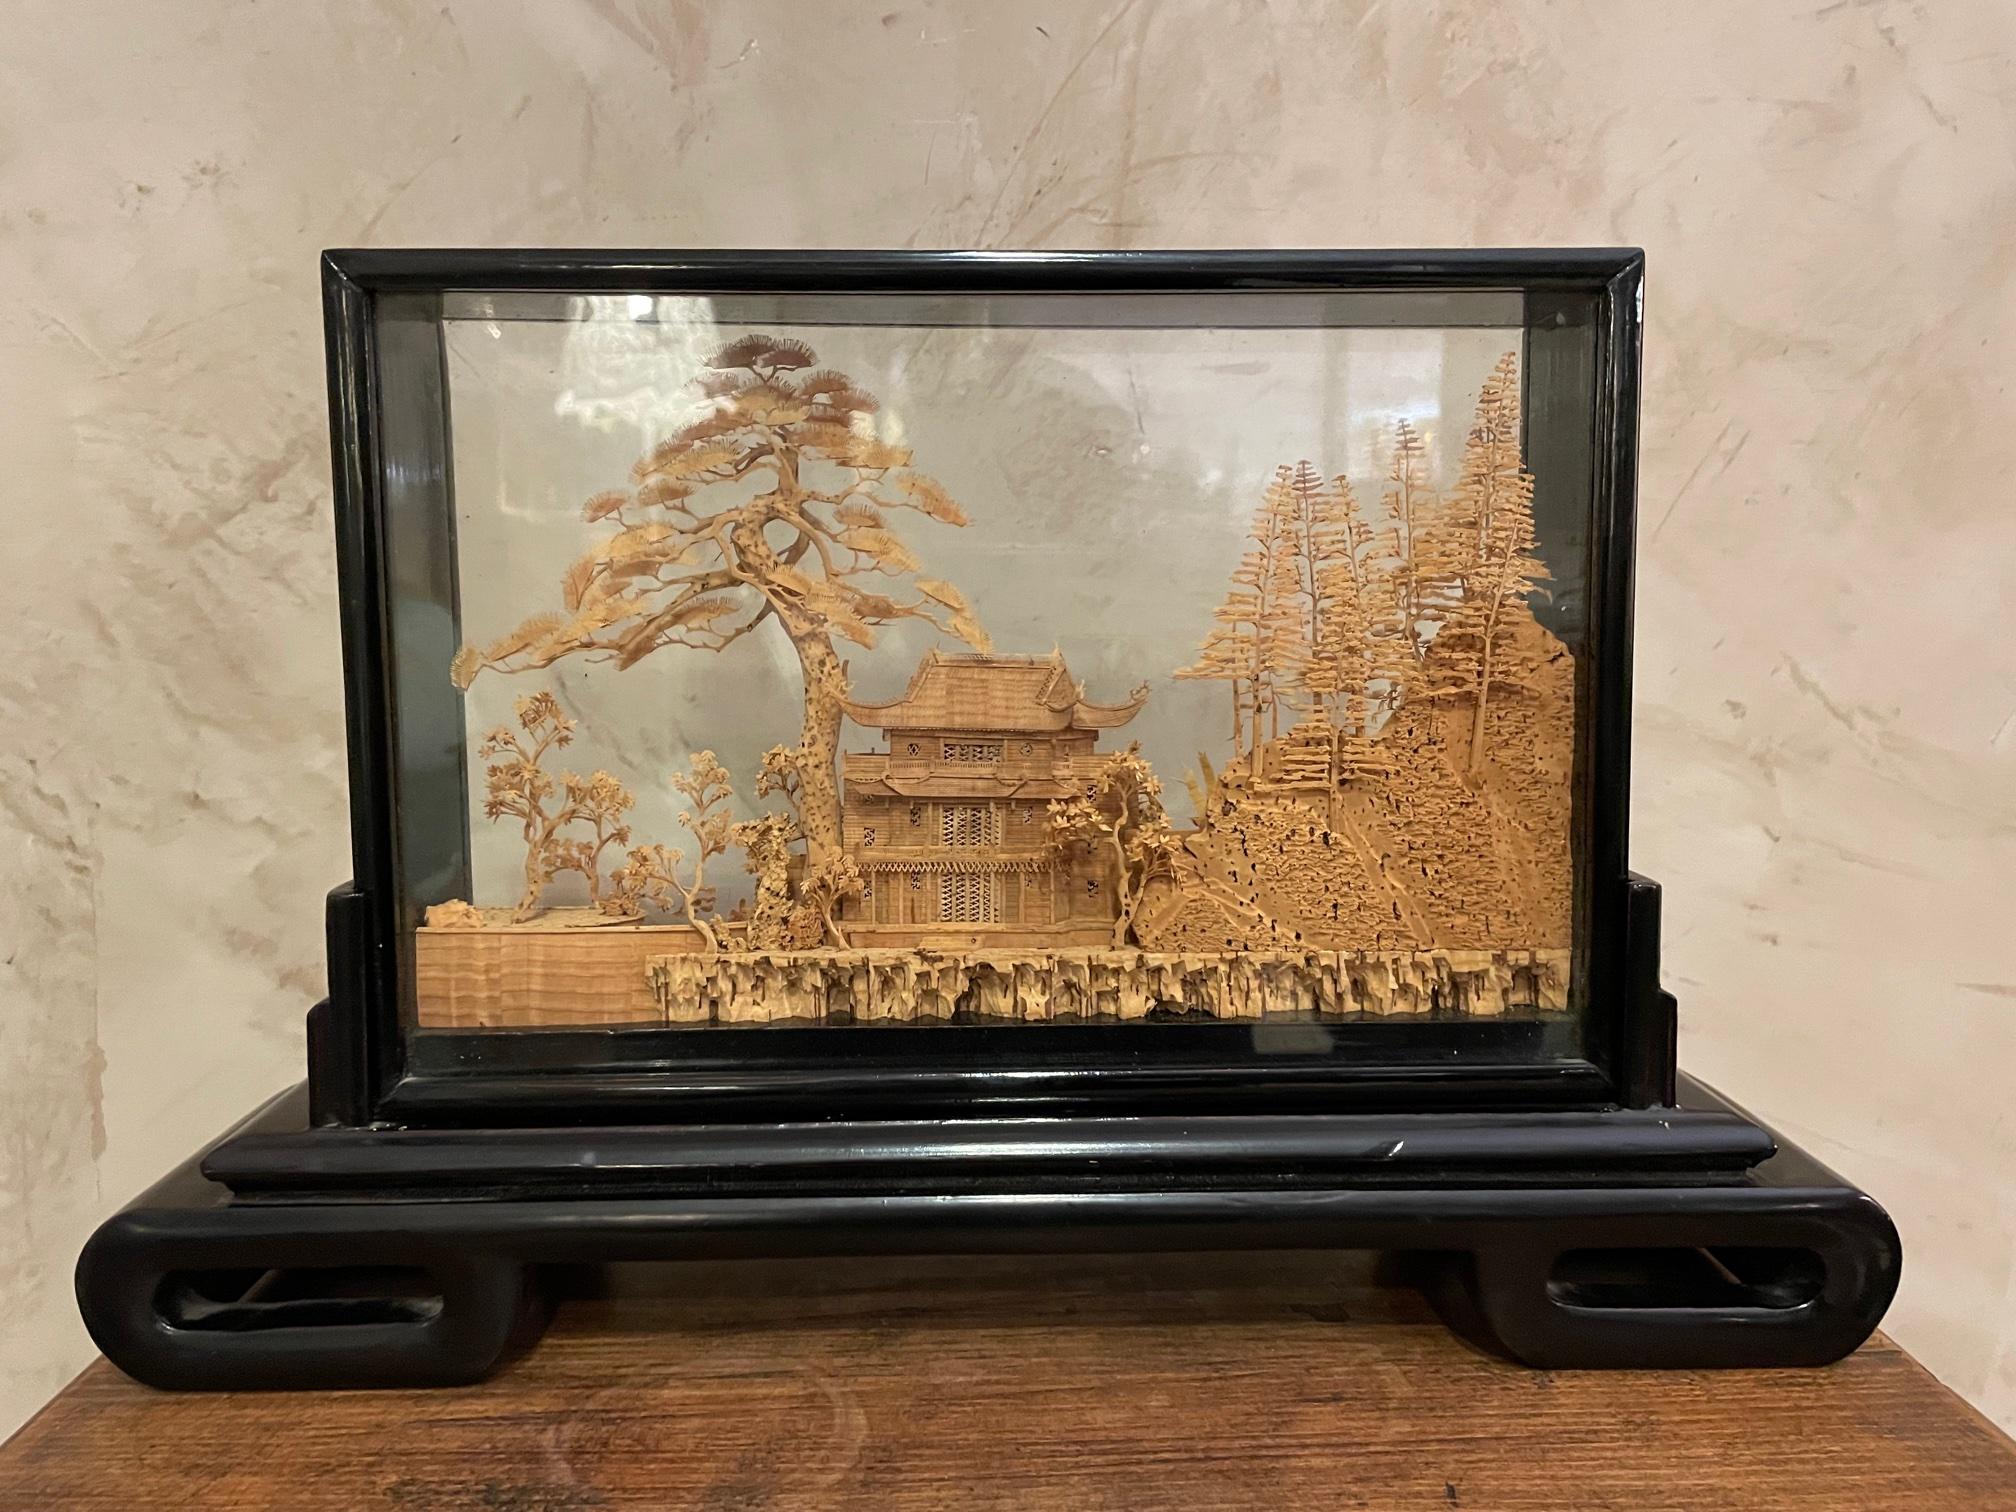 Magnifique diorama de jardin asiatique en liège chinois surdimensionné datant des années 1940. 
Cachet du fabricant chinois. Cadre en bois noirci. 
Très bonne qualité et bon état.
   